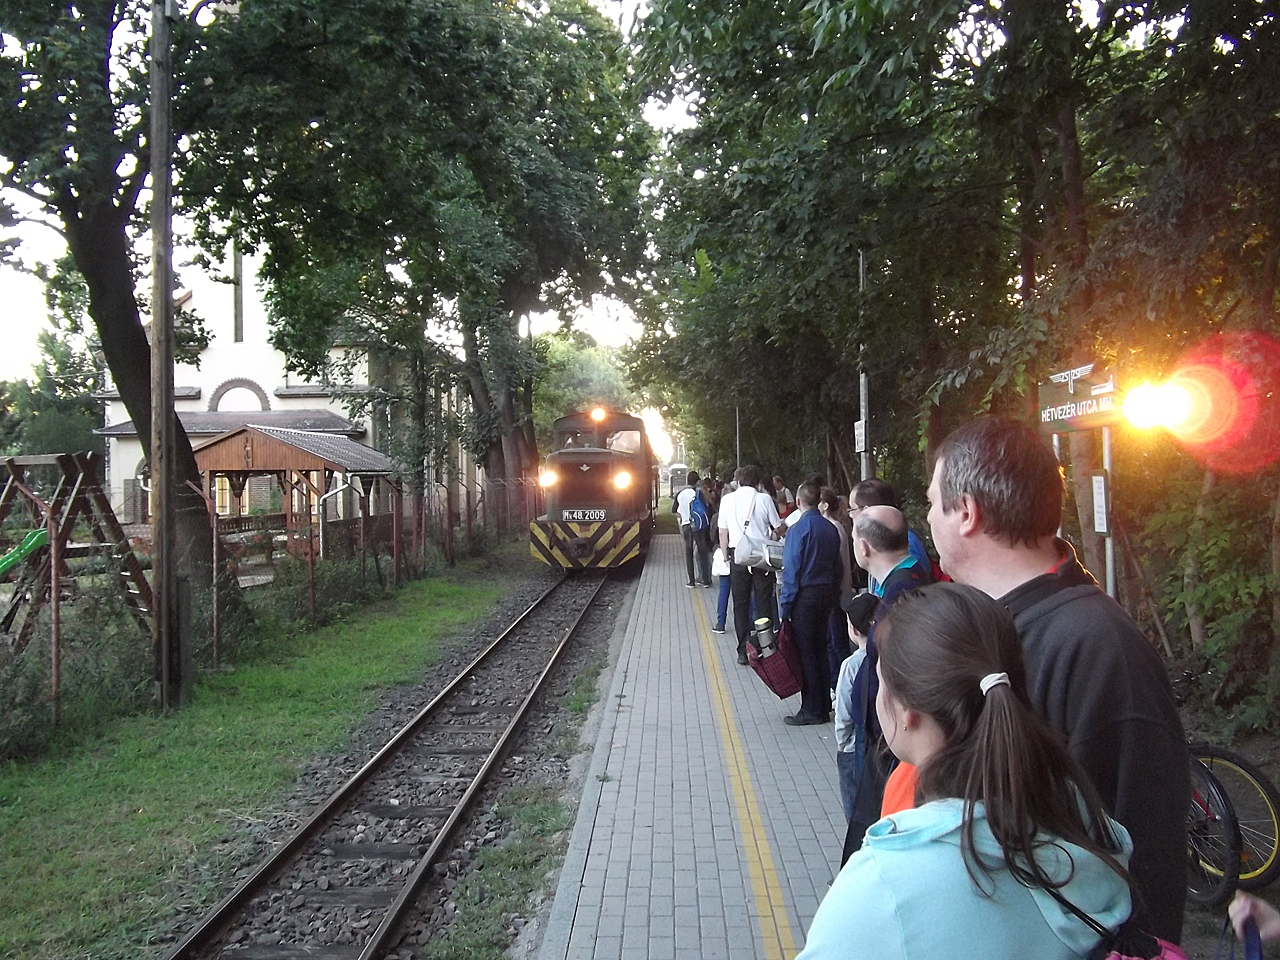 Várakozás a vonatra Debrecenben, este fél nyolc előtt. A képre kattintva fotógaléria nyílik (Balogh László felvételei)